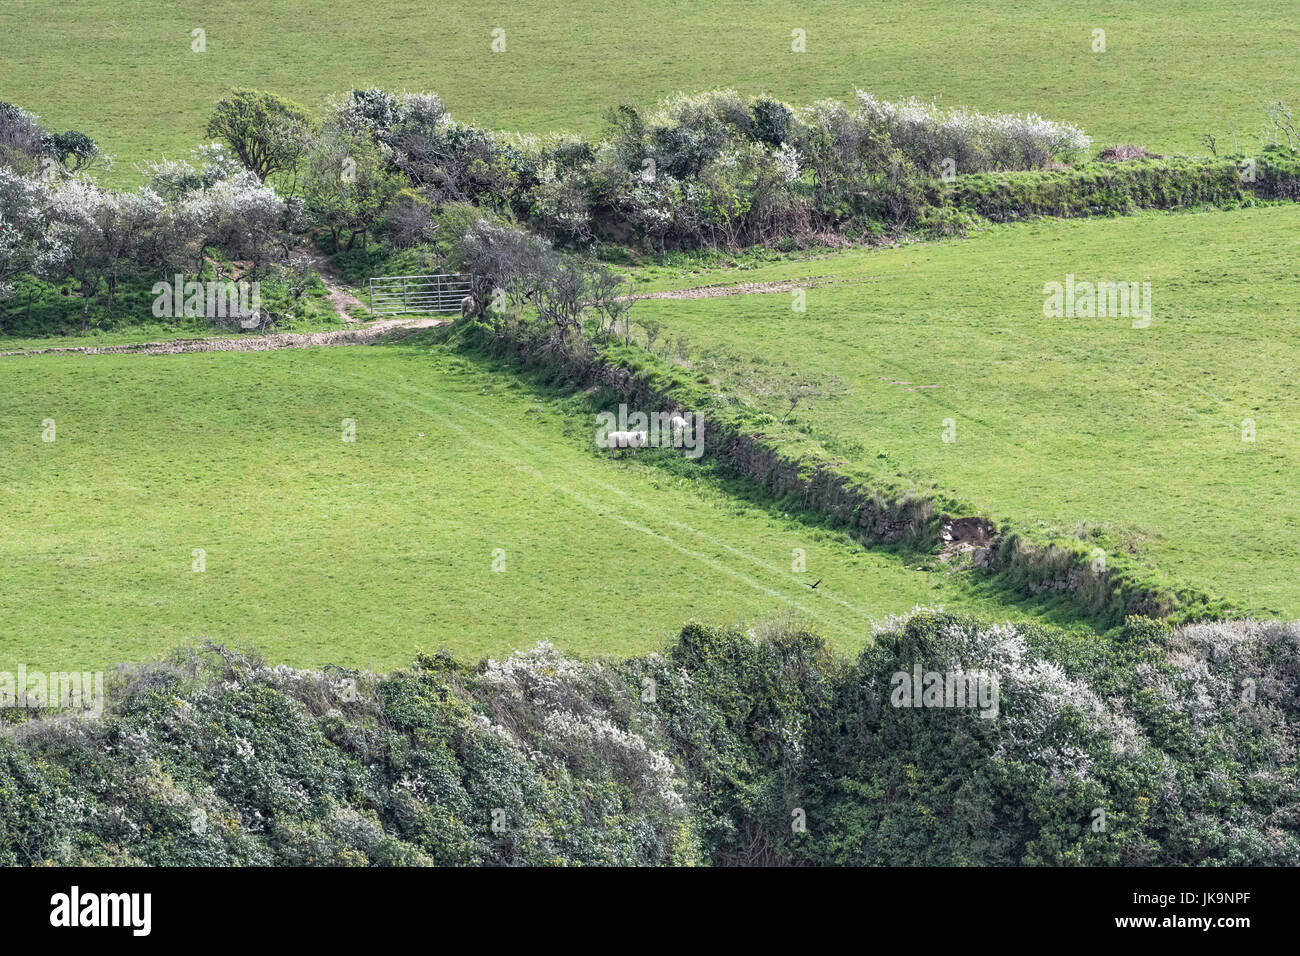 Vu les moutons à côté d'un Cornish haie - haies étant de précieux habitats fauniques ainsi que les brise-vent et bornage. Banque D'Images